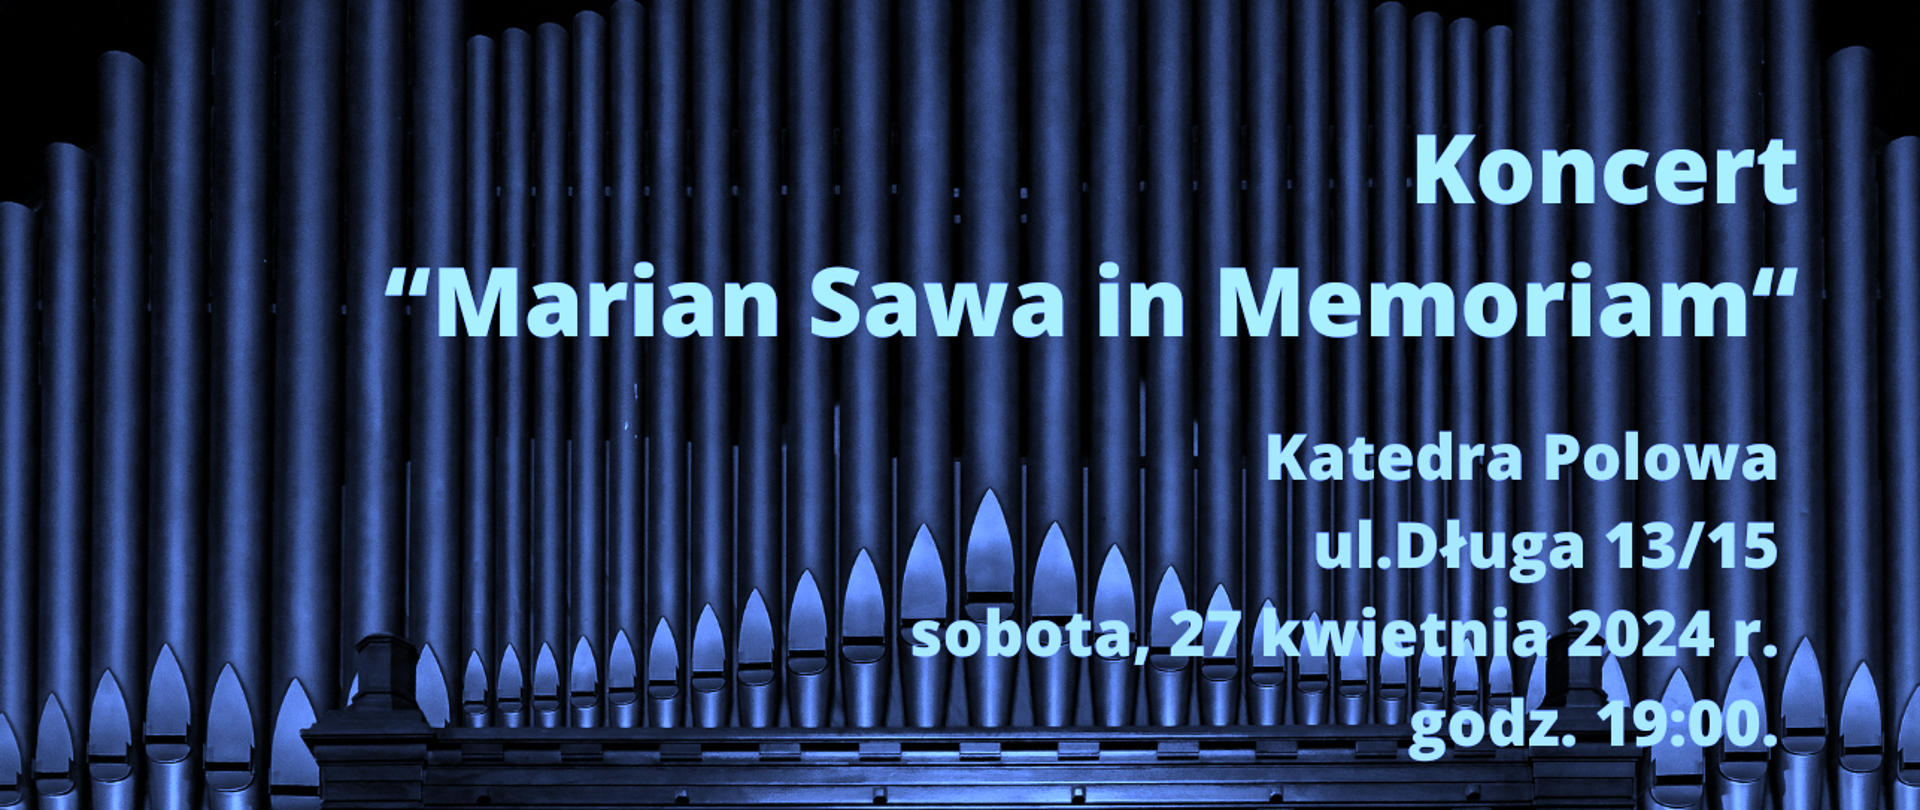 Baner na koncert Marian Sawa in Memoriam, Katedra Polowa ul. Długa 13/17 sobota 27 kwietnia 2024 r. godz. 19:00 - napis na czarnogranatowym tle z piszczałkami organów